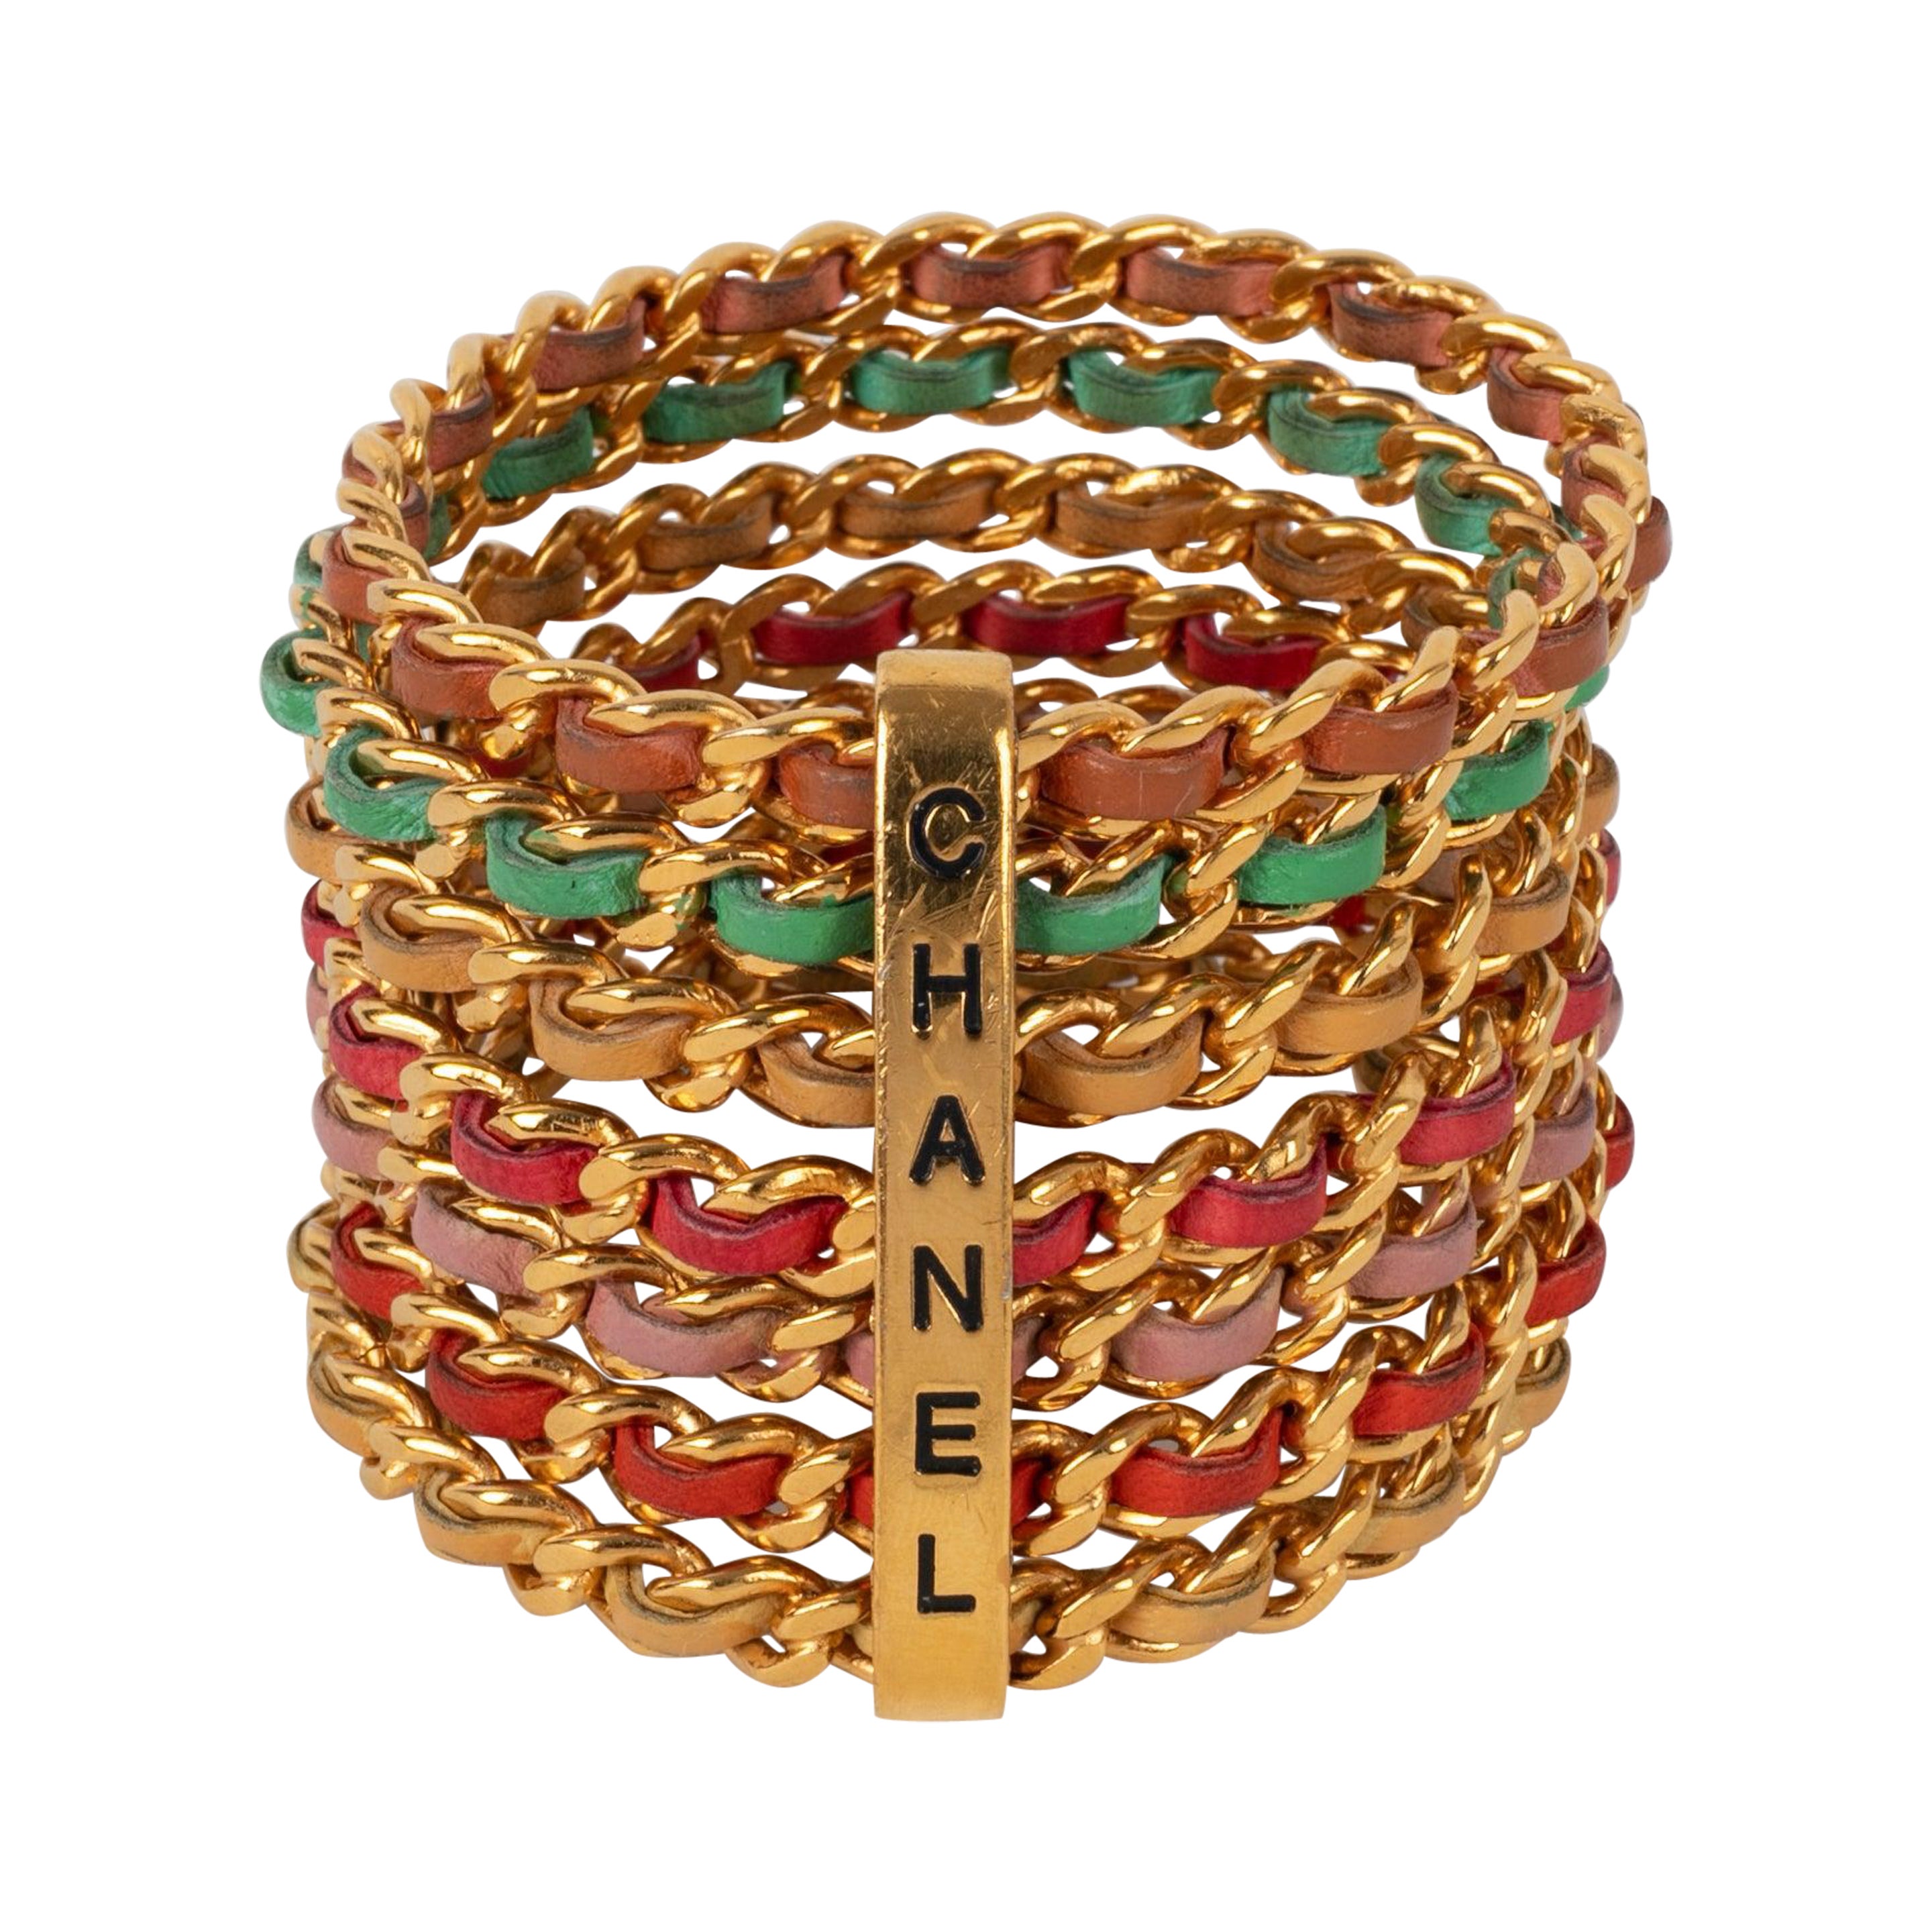 Chanel Cuff Bracelets Composed of Seven Golden Metal Bracelets, 1993 For Sale